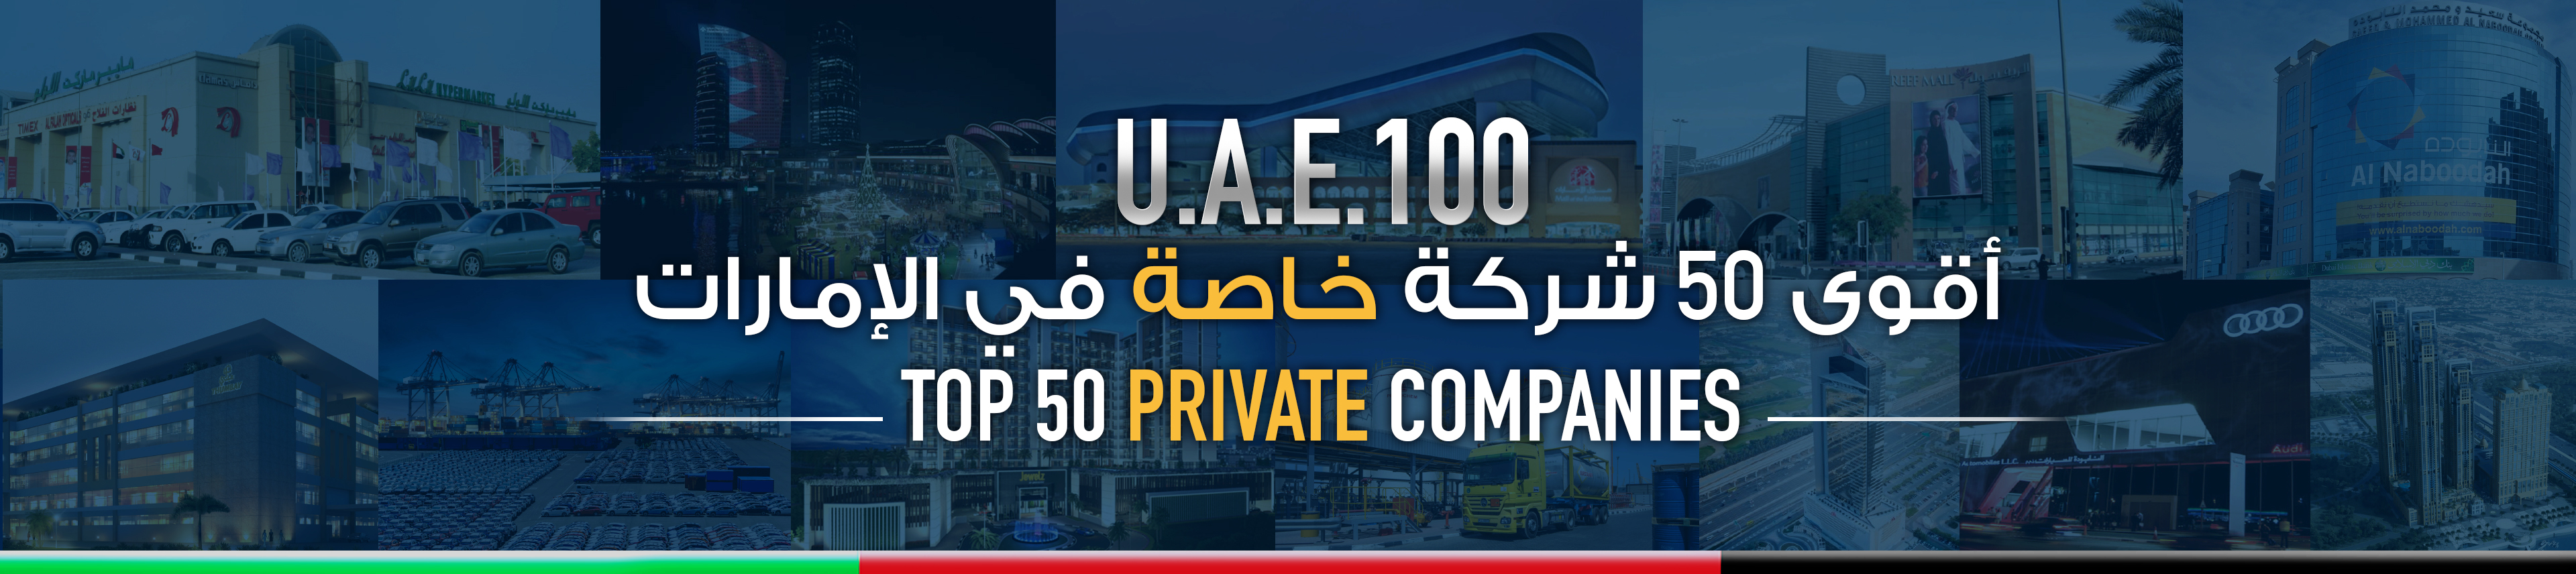 أقوى 50 شركة خاصة في الإمارات